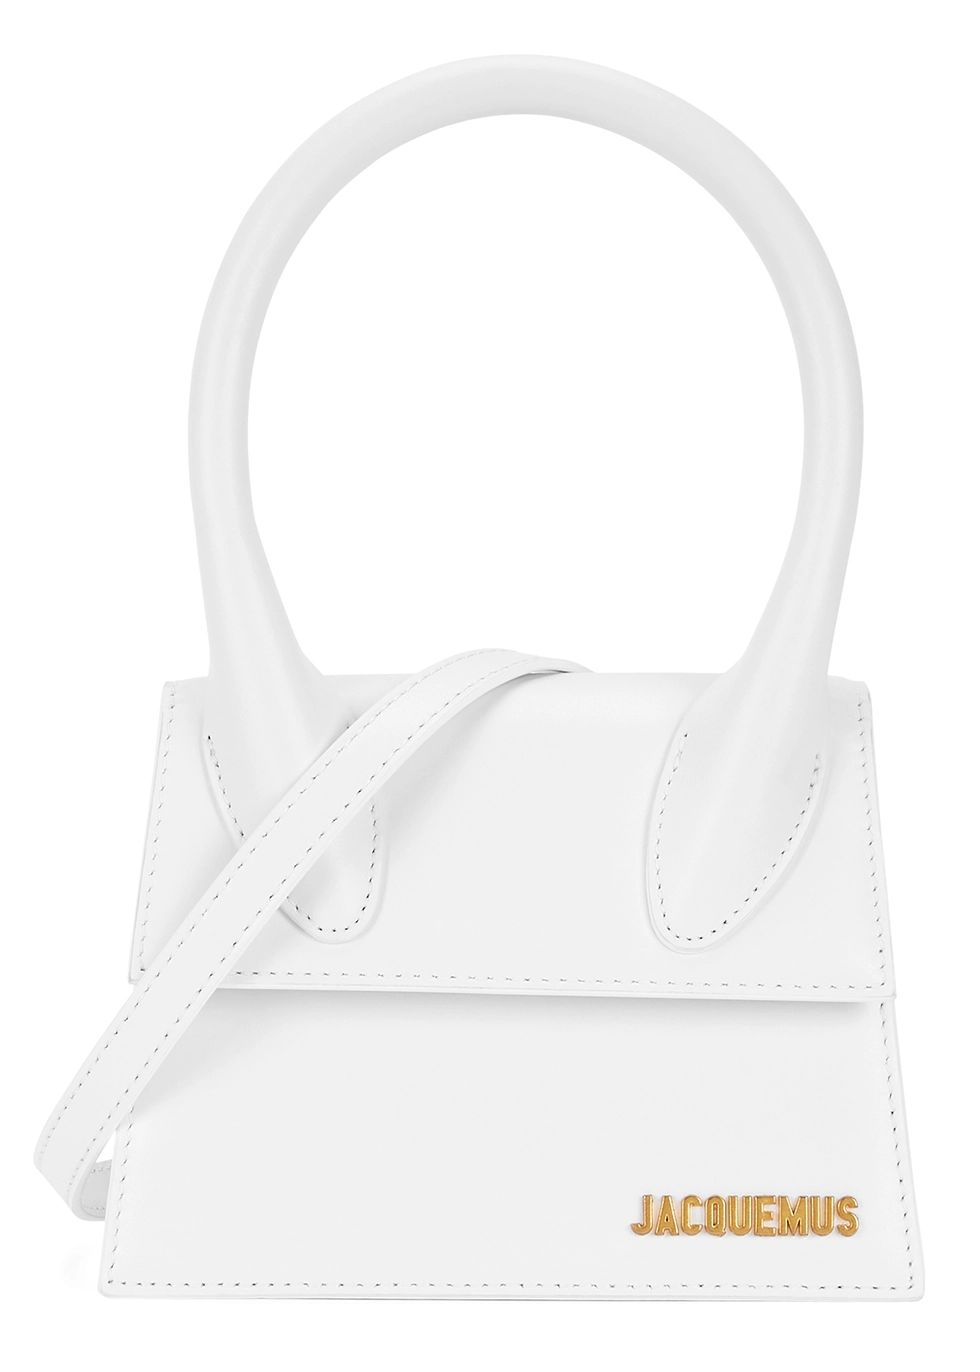 Le Chiquito Moyen white top handle bag | Harvey Nichols (Global)